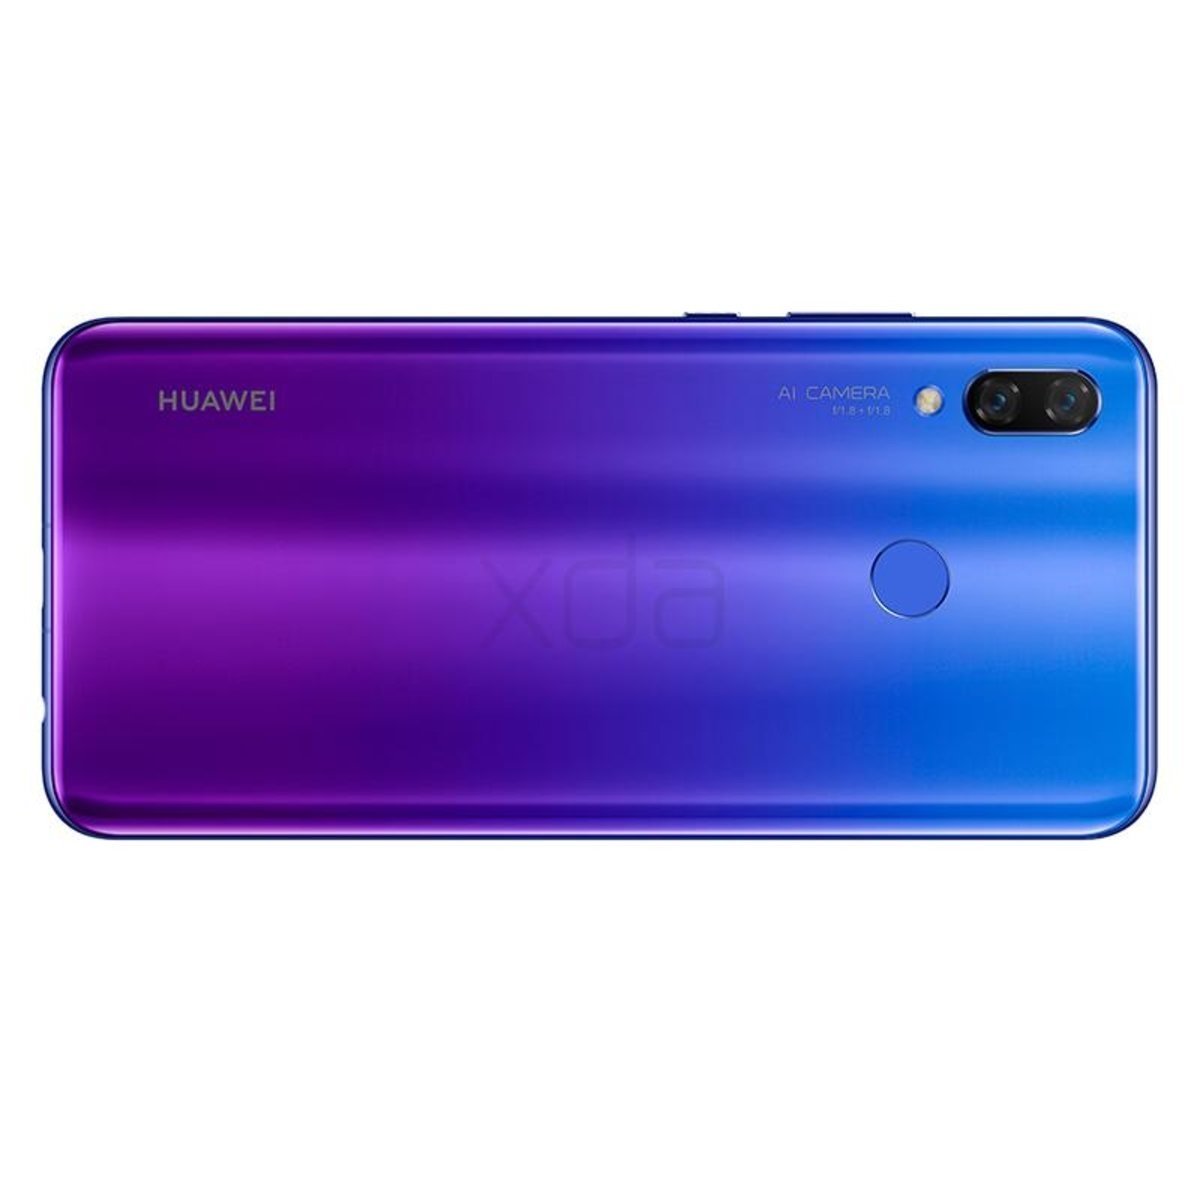 Huawei Nova 3: características e imágenes oficiales filtradas